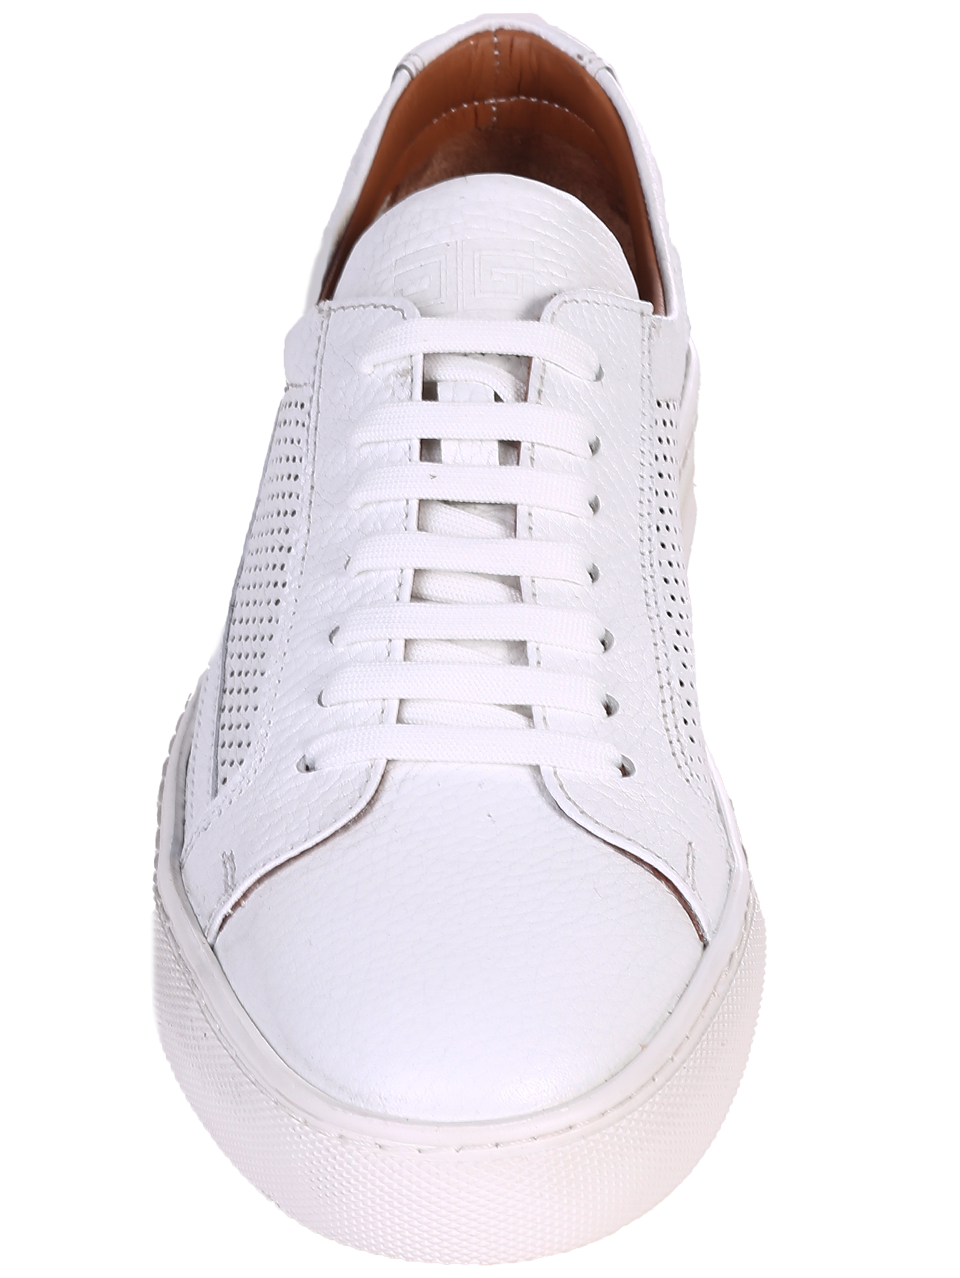 Ежедневни мъжки обувки от естествена кожа 7AT-24364 white